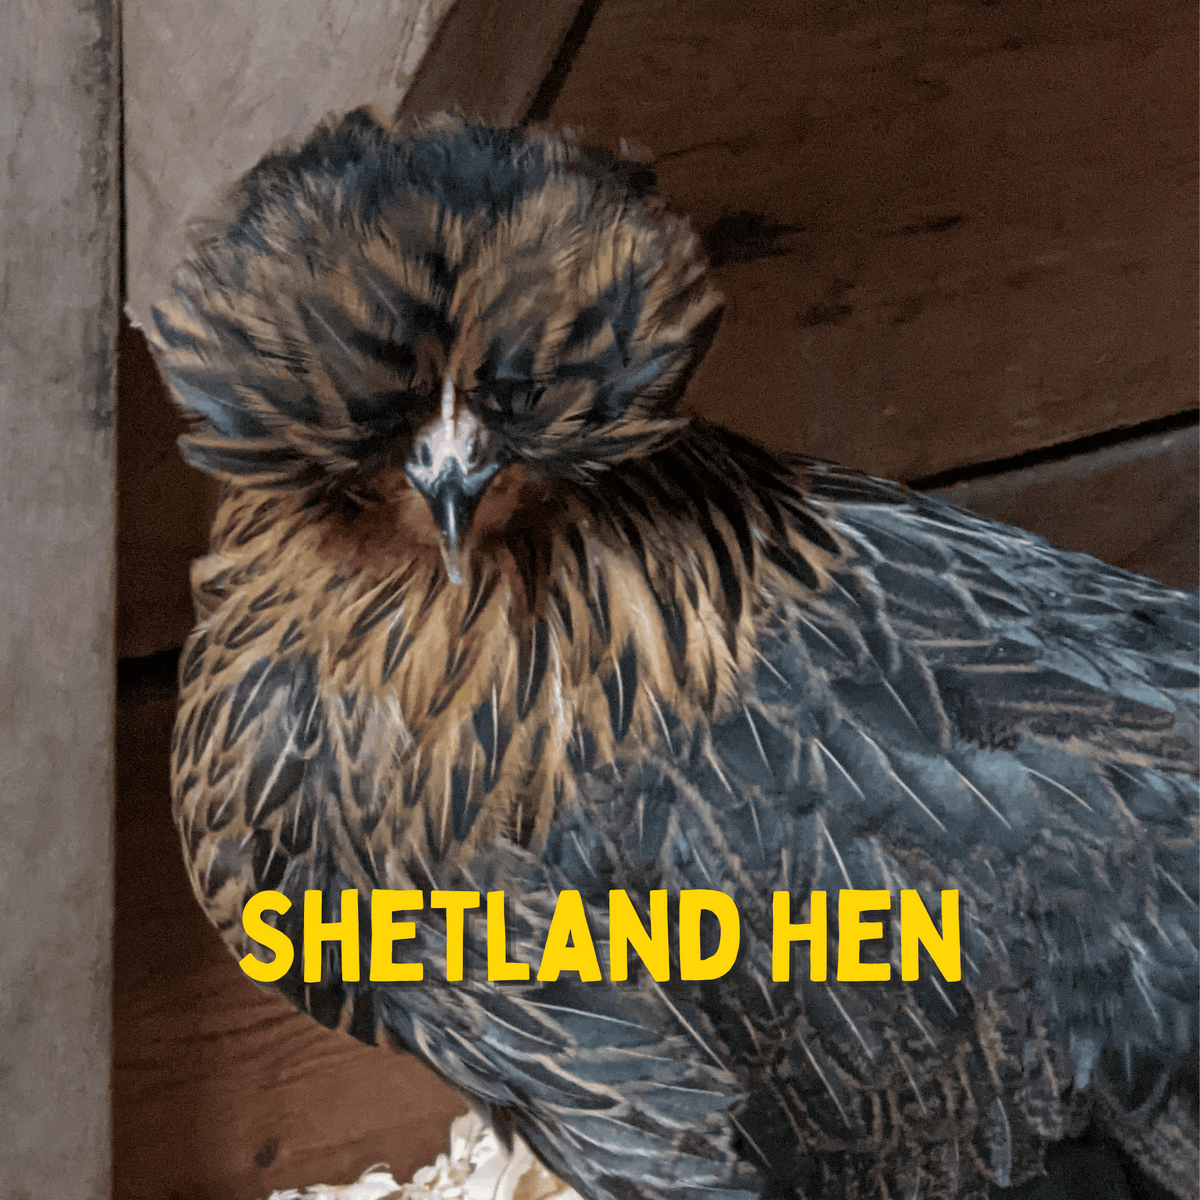 One Dozen Shetland Hen Chicken Hatching Eggs